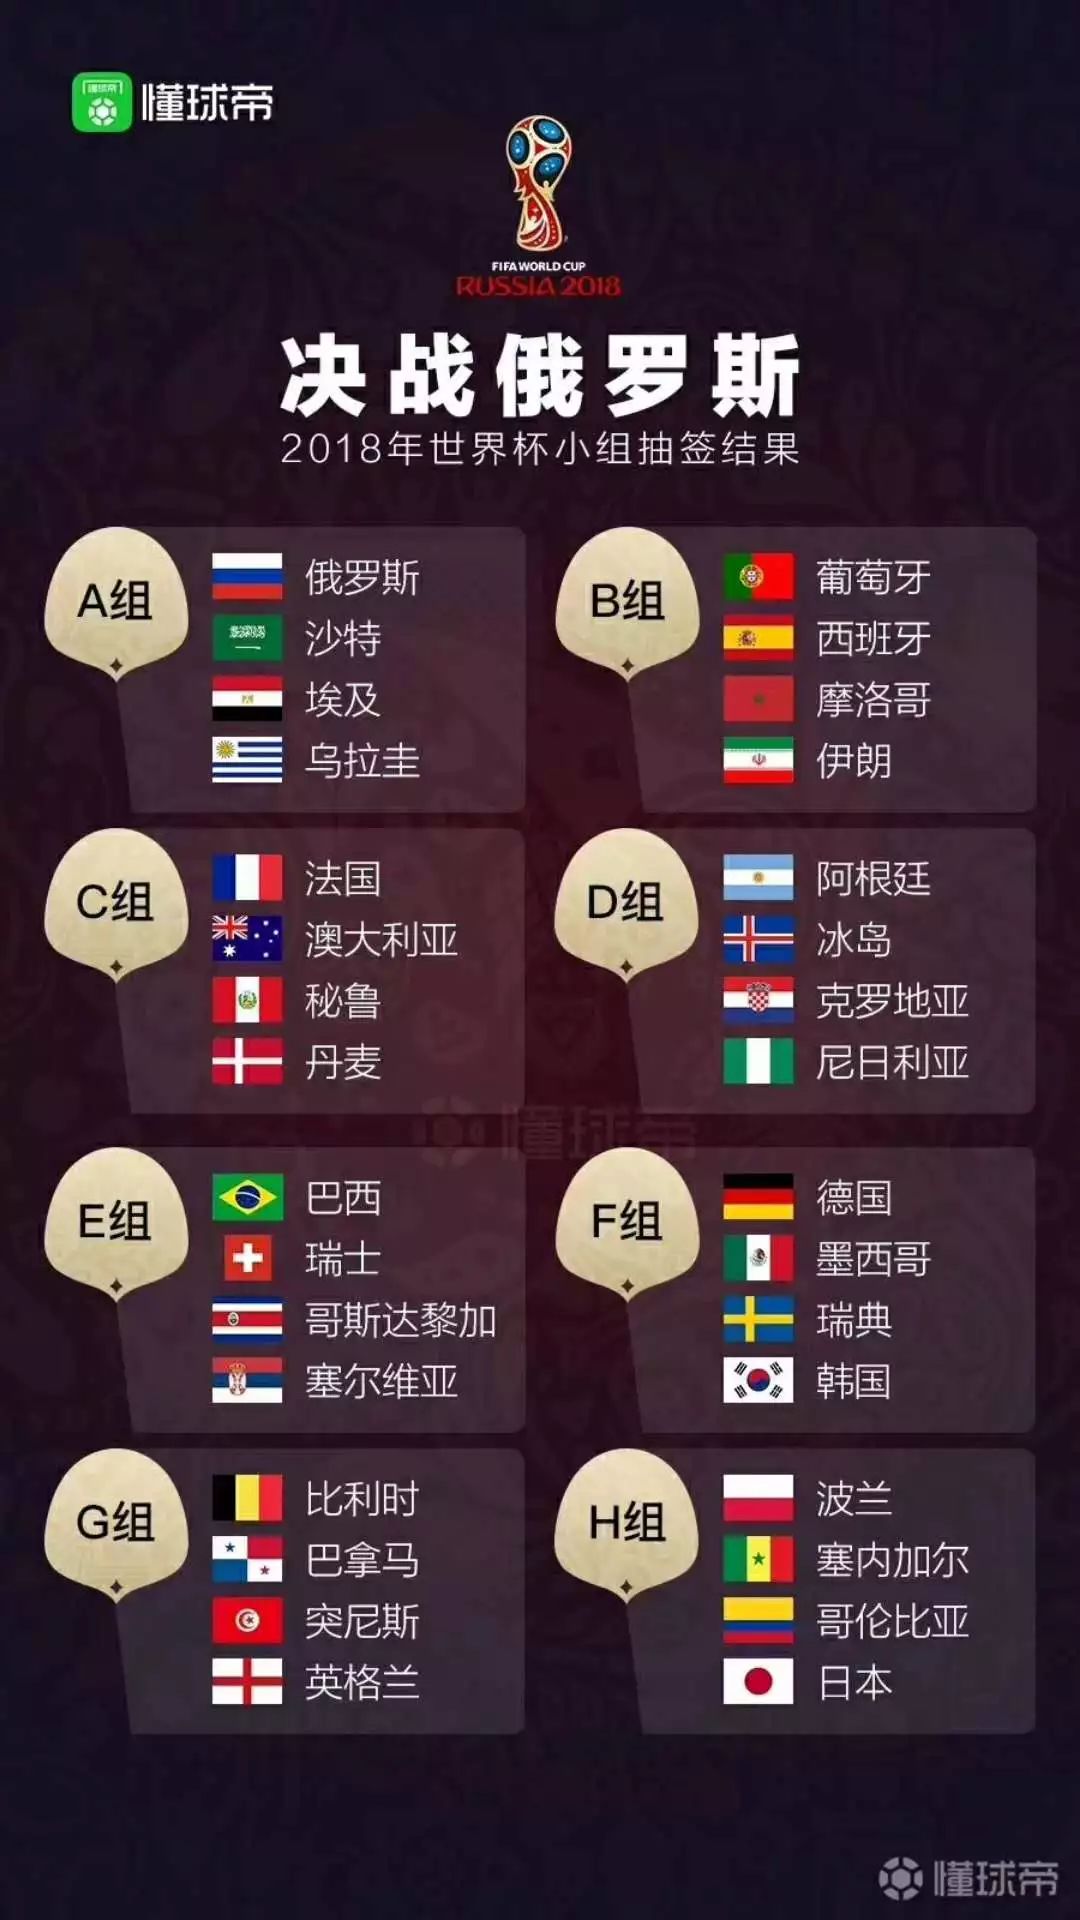 2018年世界杯小组抽签结果公布!哪个国家运气